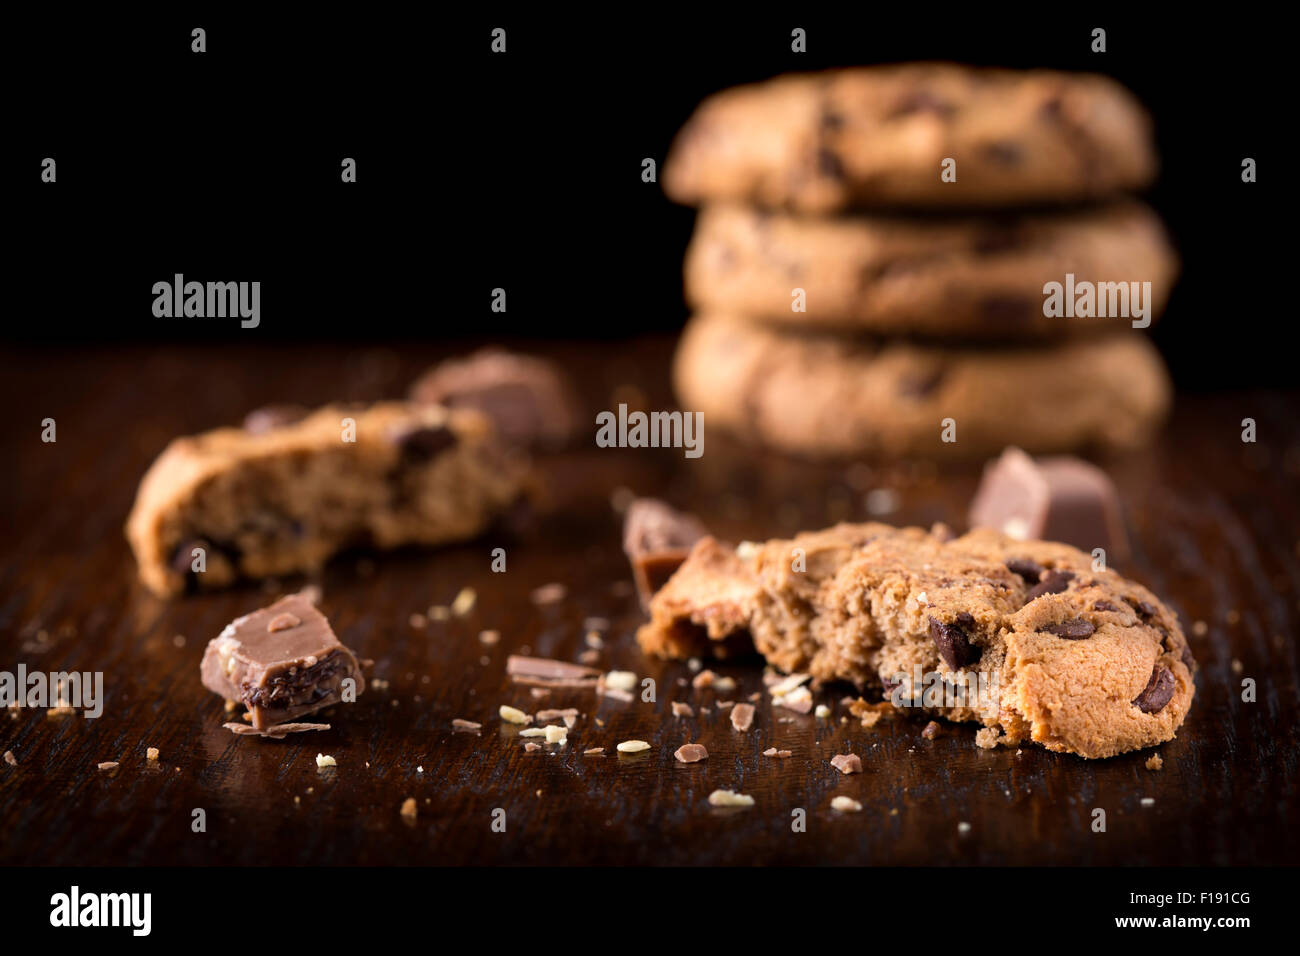 Las galletas con trocitos de chocolate y trozos de chocolate sobre fondo de madera Foto de stock